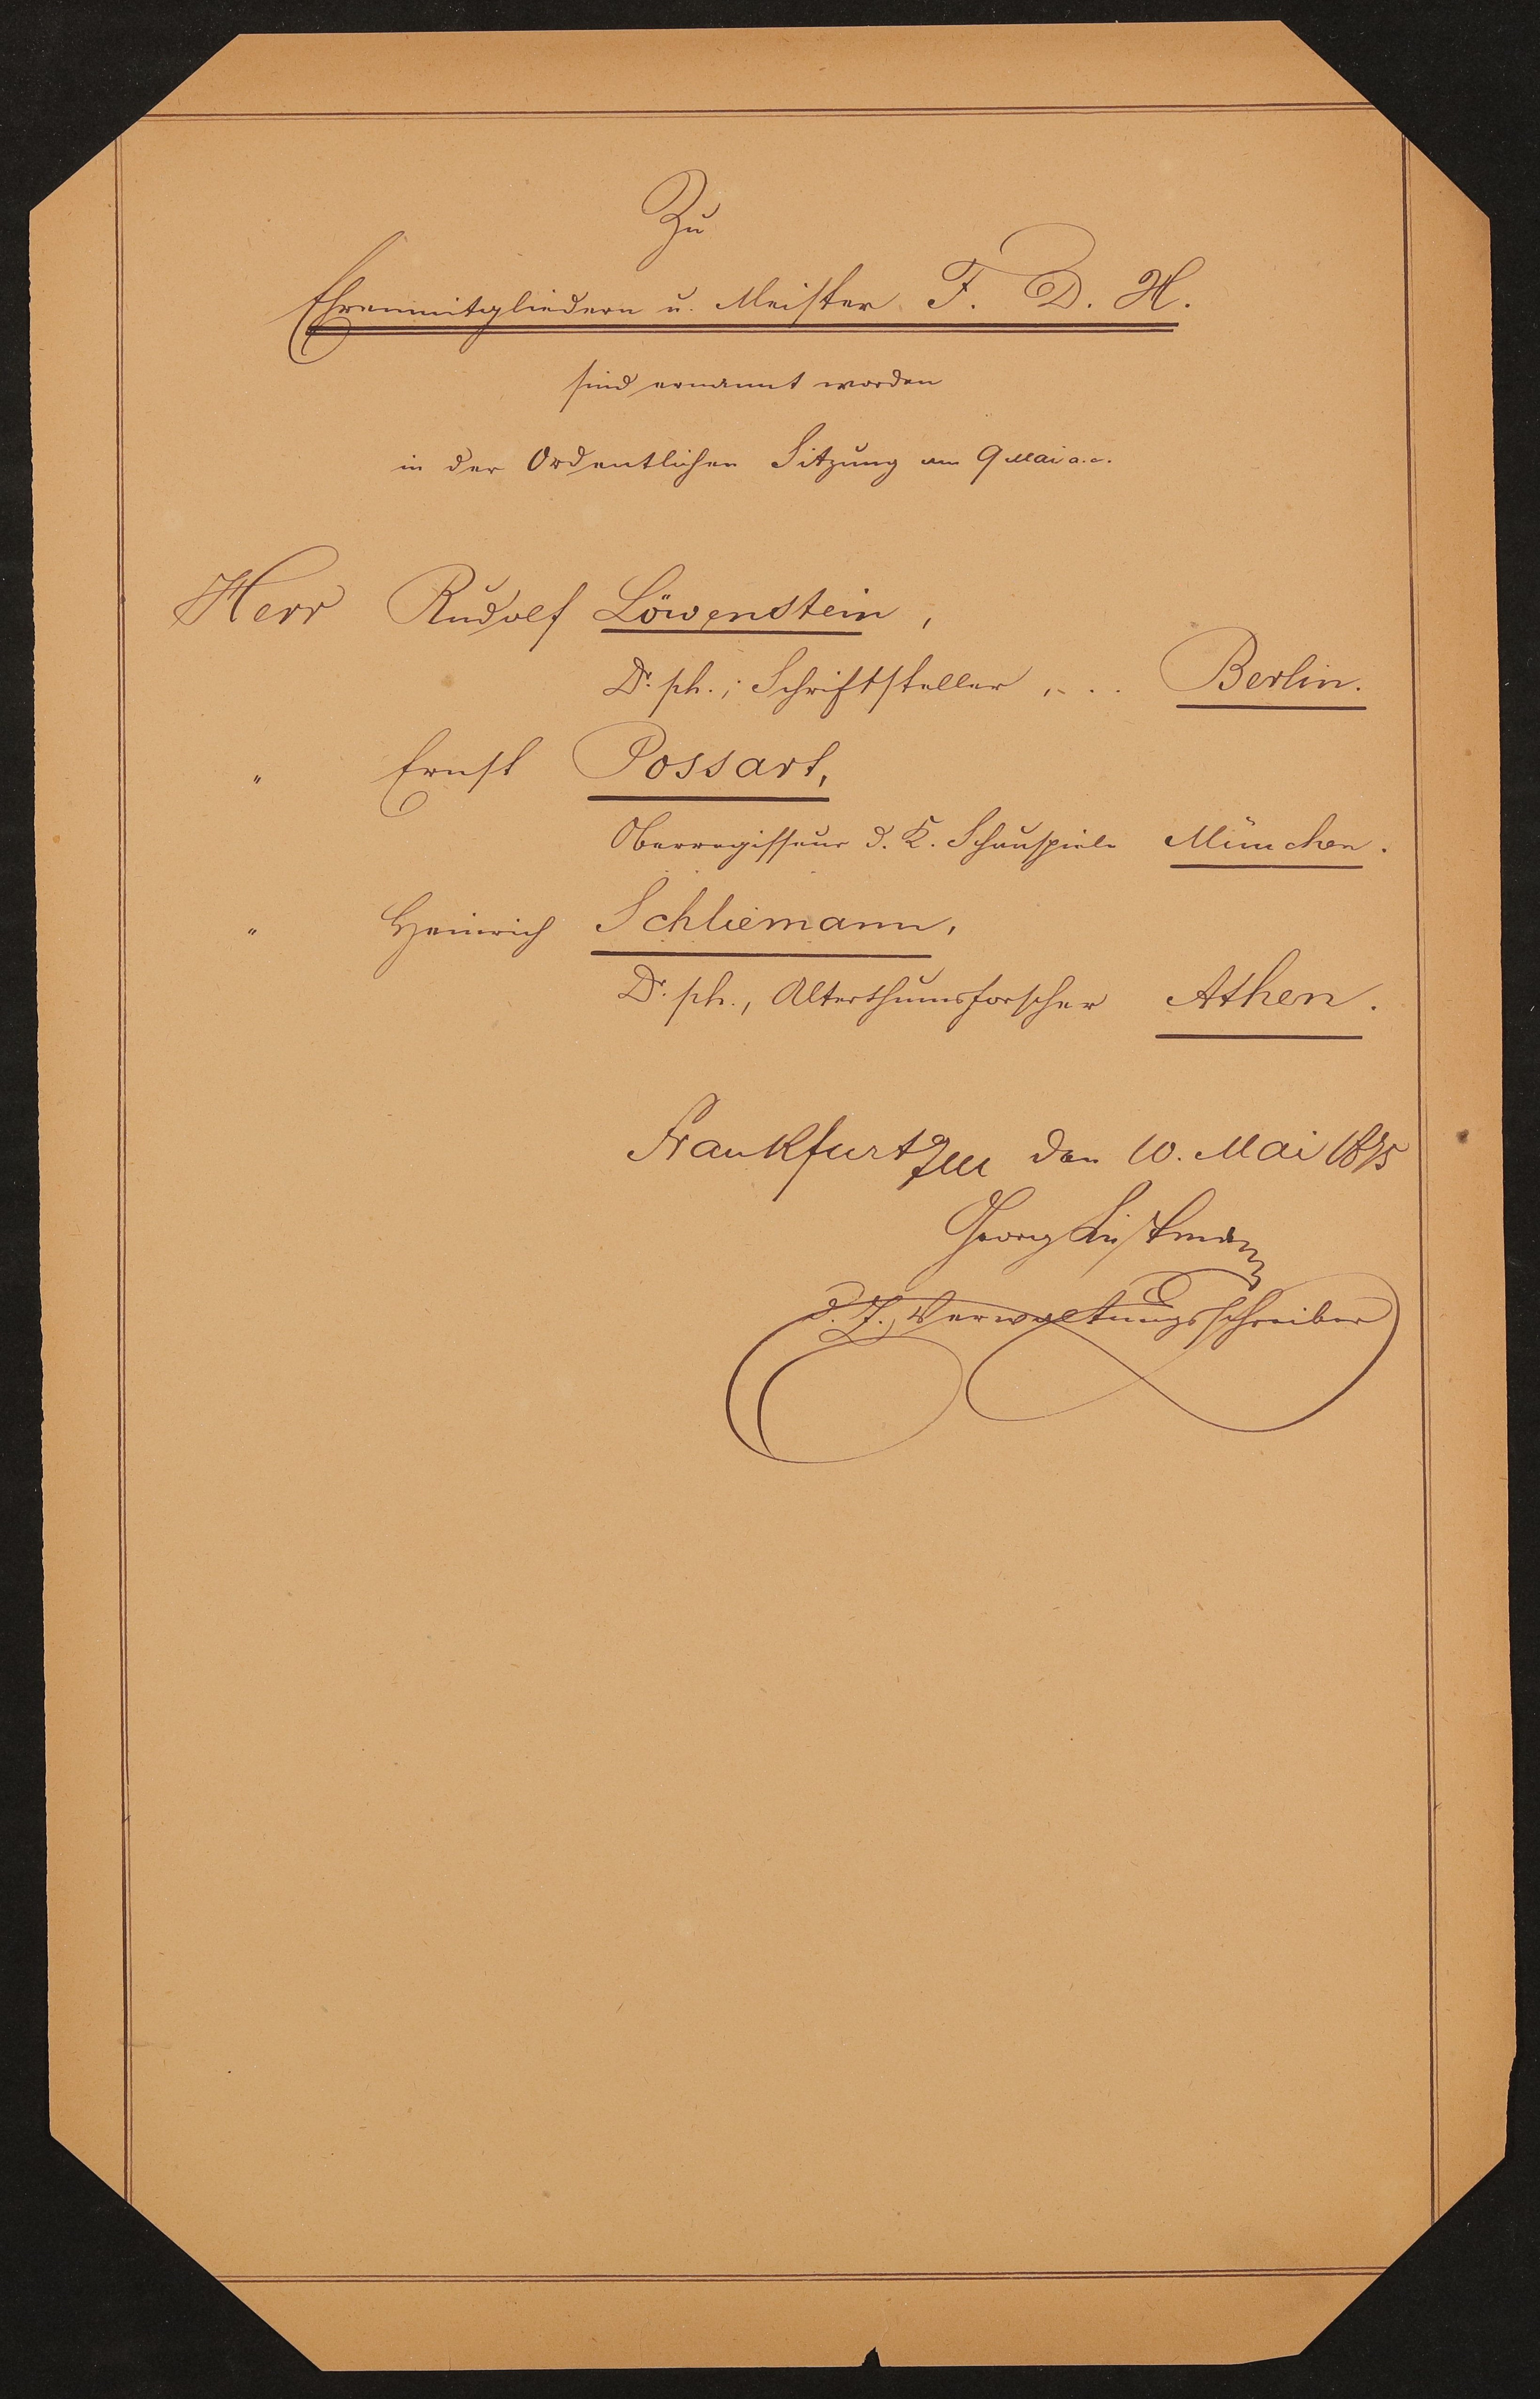 Liste "Zu Ehrenmitgliedern und Meister F.D.H. sind ernannt worden in der Ordentlichen Sitzung am 9. Mai [1875]" (Freies Deutsches Hochstift / Frankfurter Goethe-Museum Public Domain Mark)